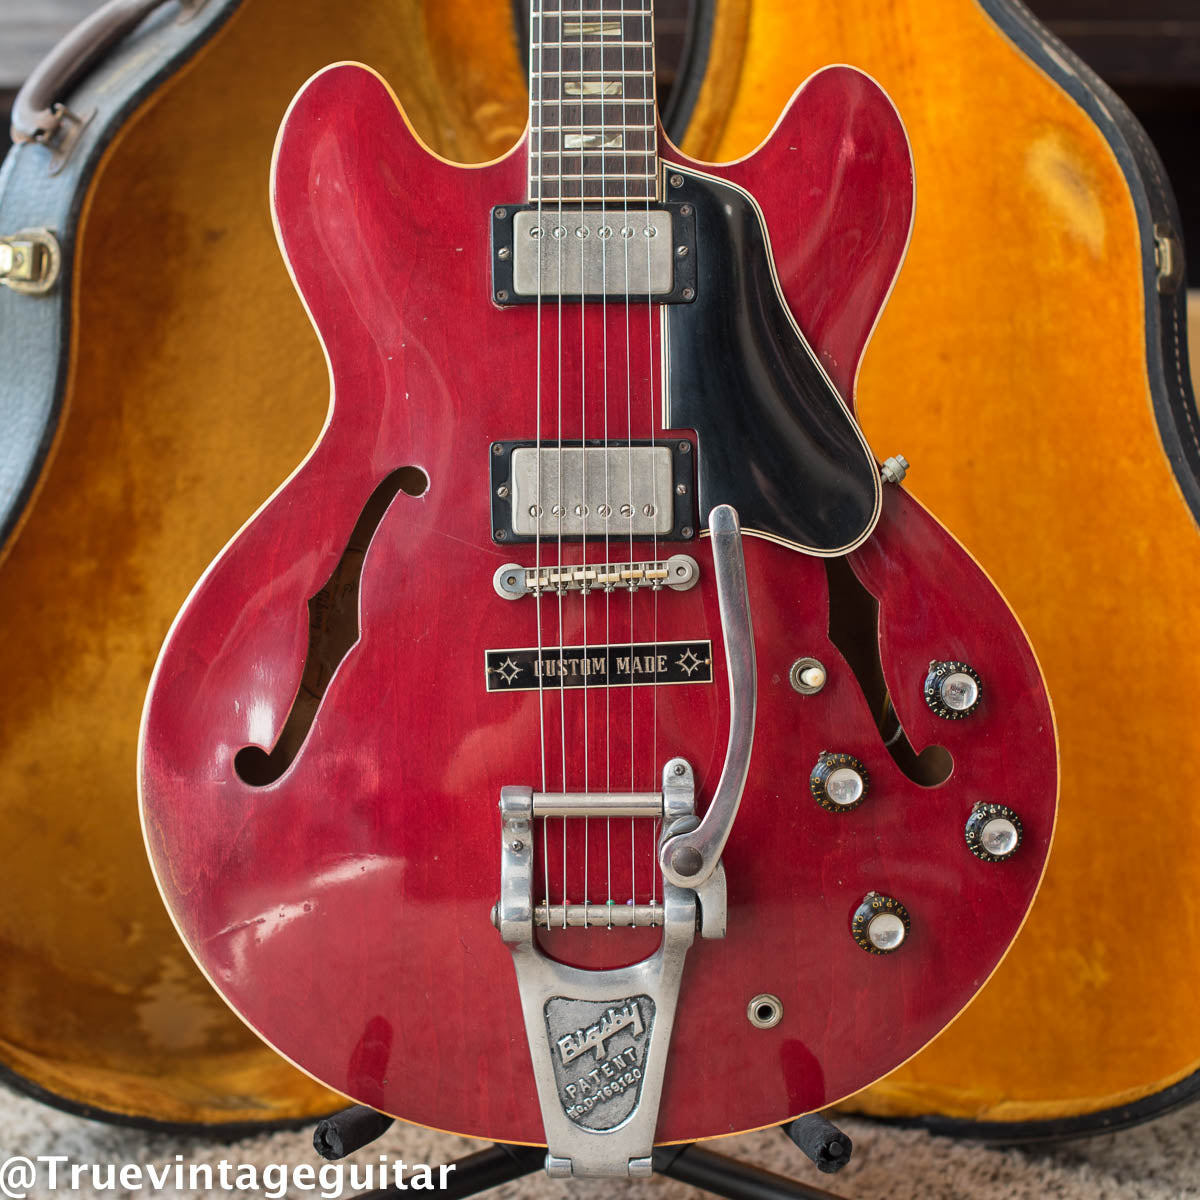 1964 Gibson ES-335 Custom Made plaque